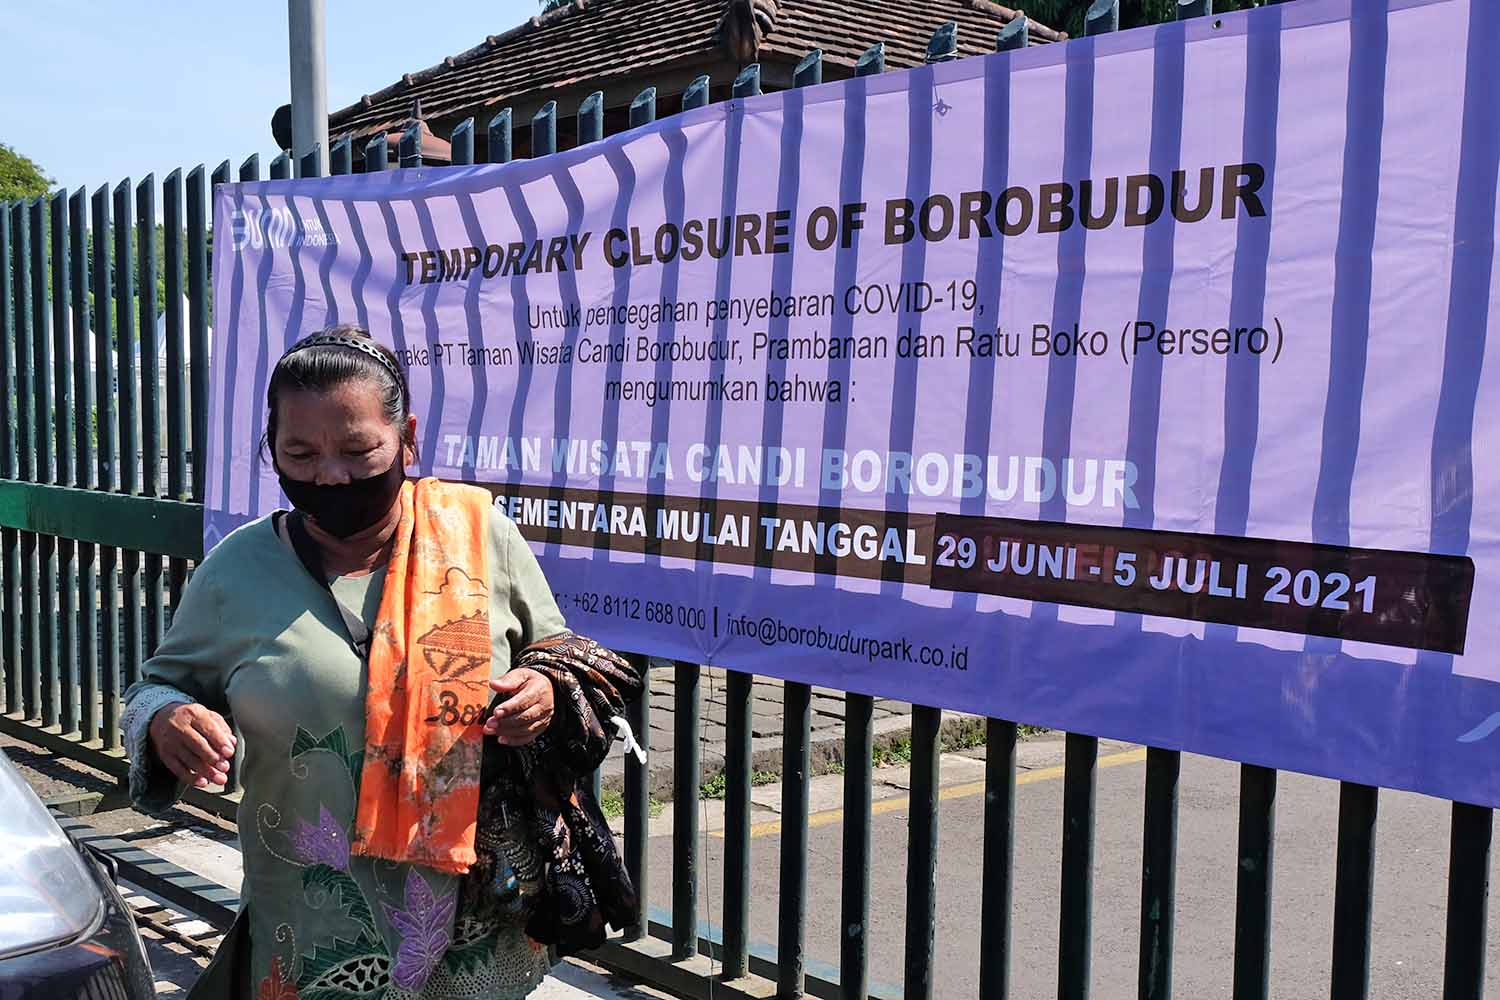 Lowongan Kerja Pt Taman Wisata Candi Borobudur 2019